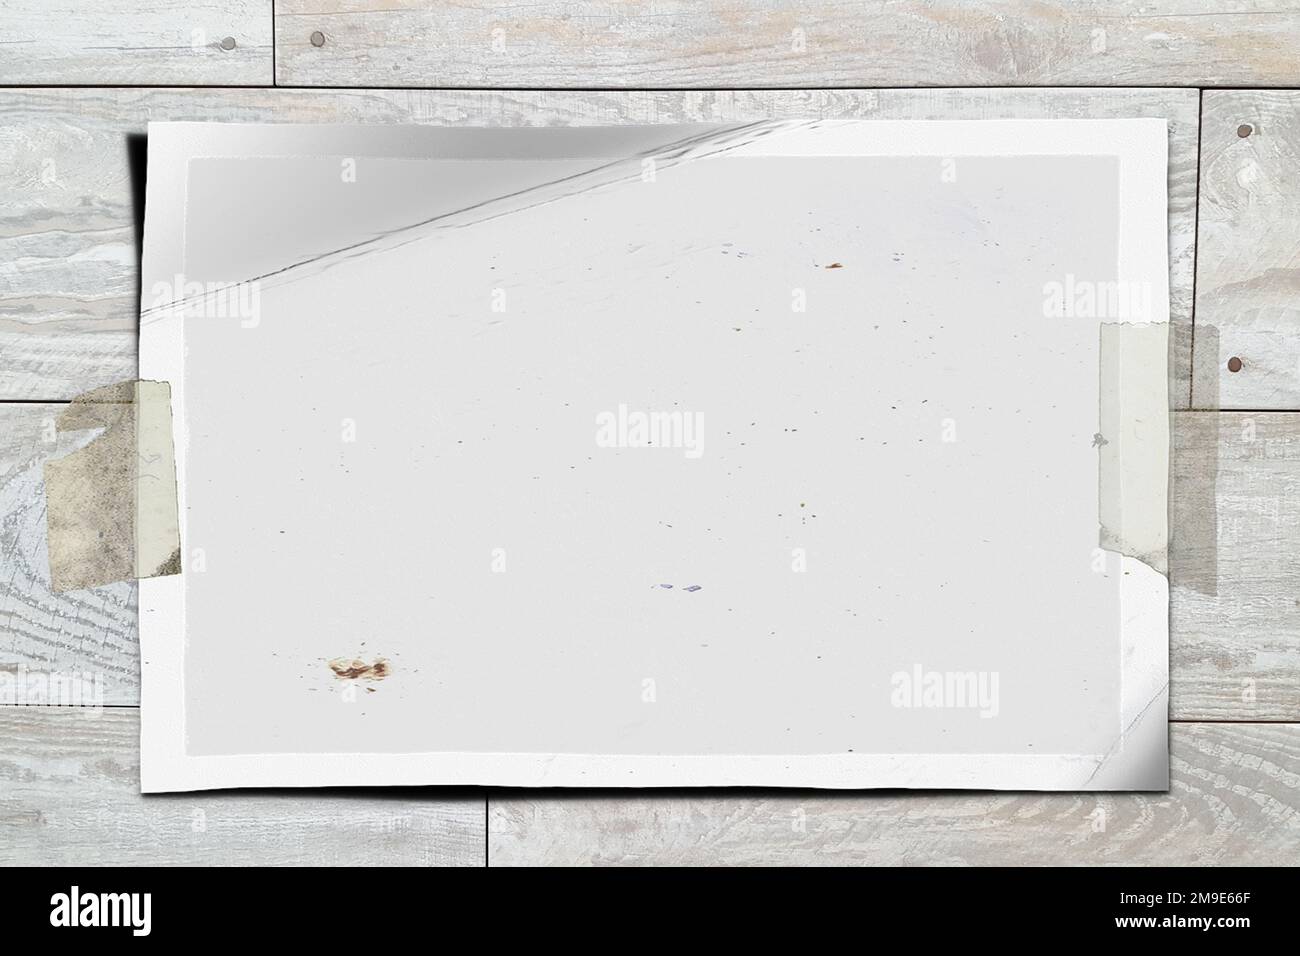 Una imagen polaroid vacía pegado en una hoja de papel Fotografía de stock -  Alamy